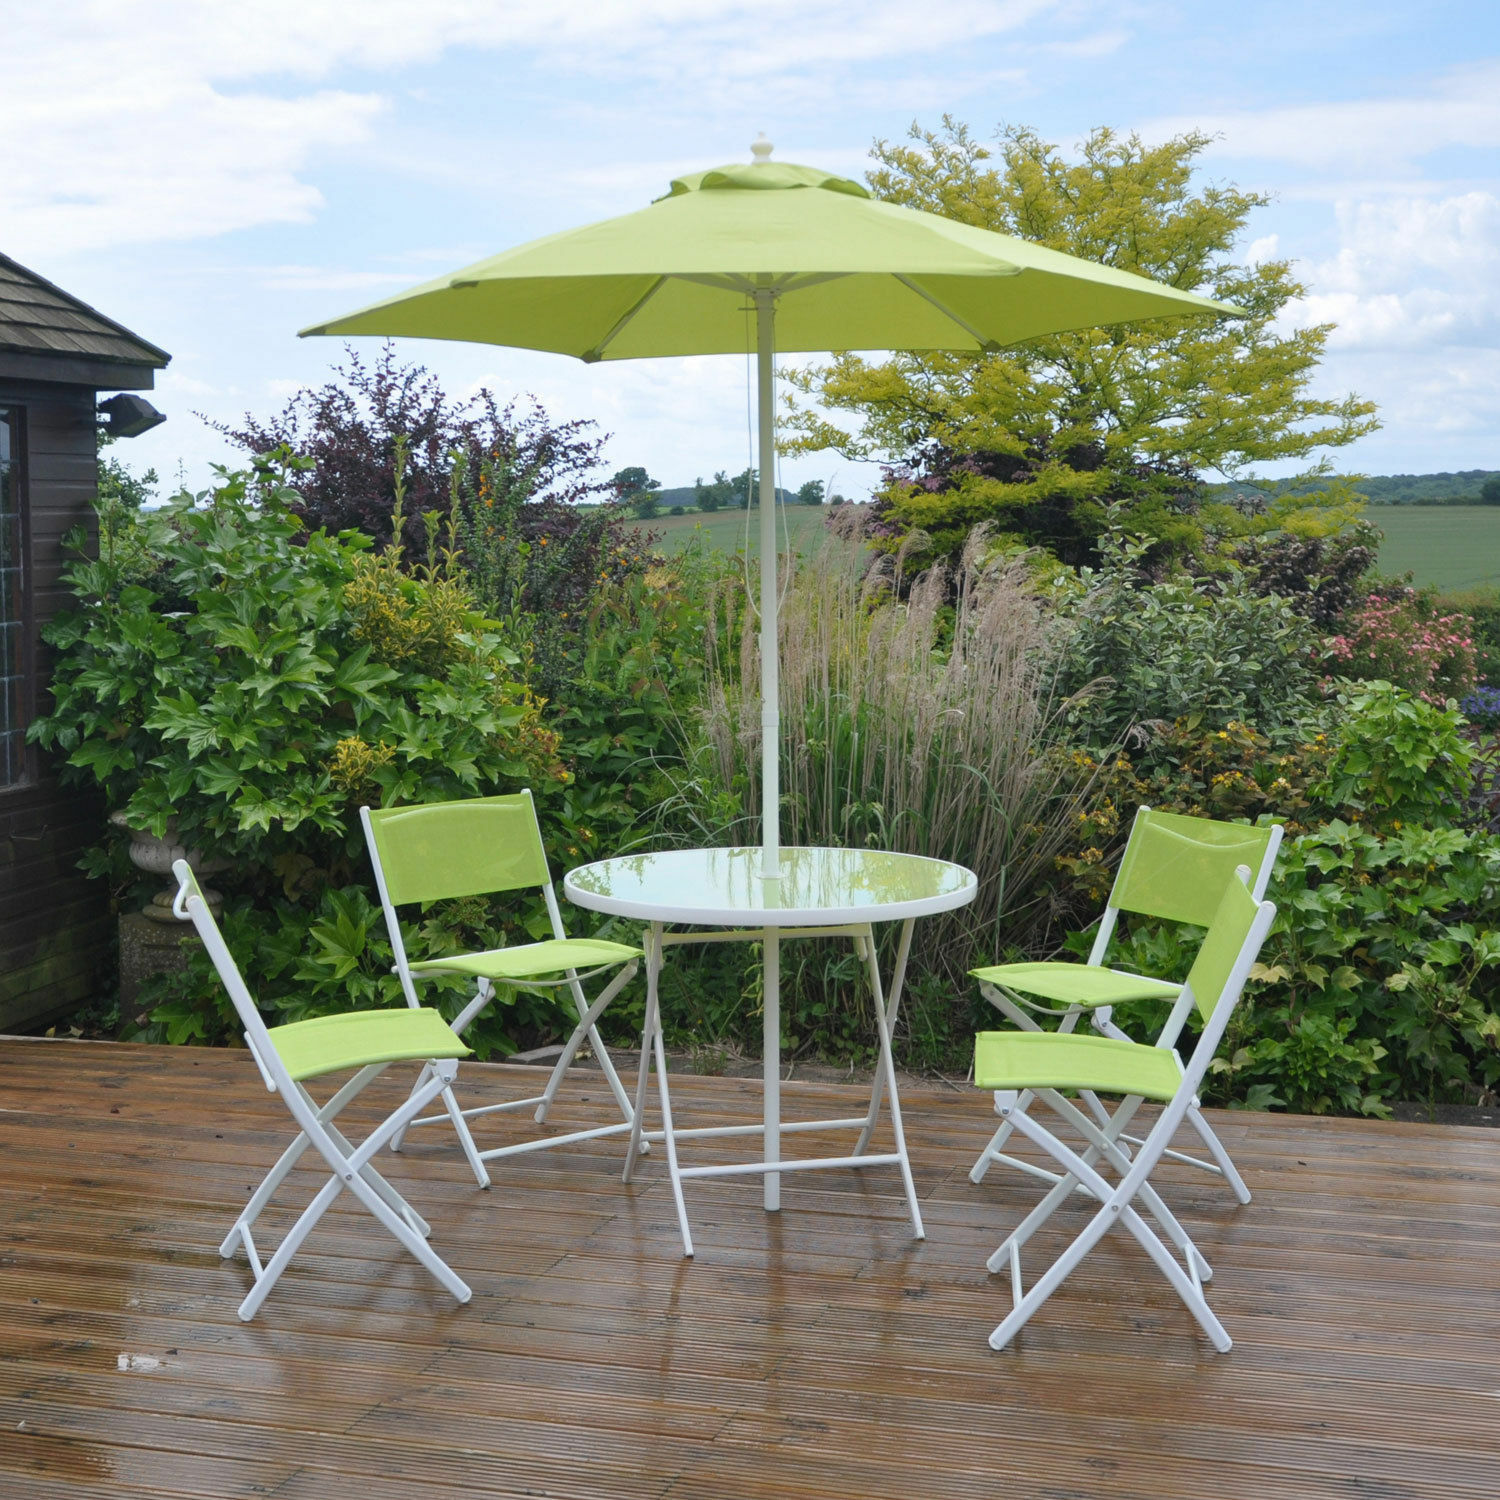 Outdoor villa courtyard garden table and chair furniture design concept